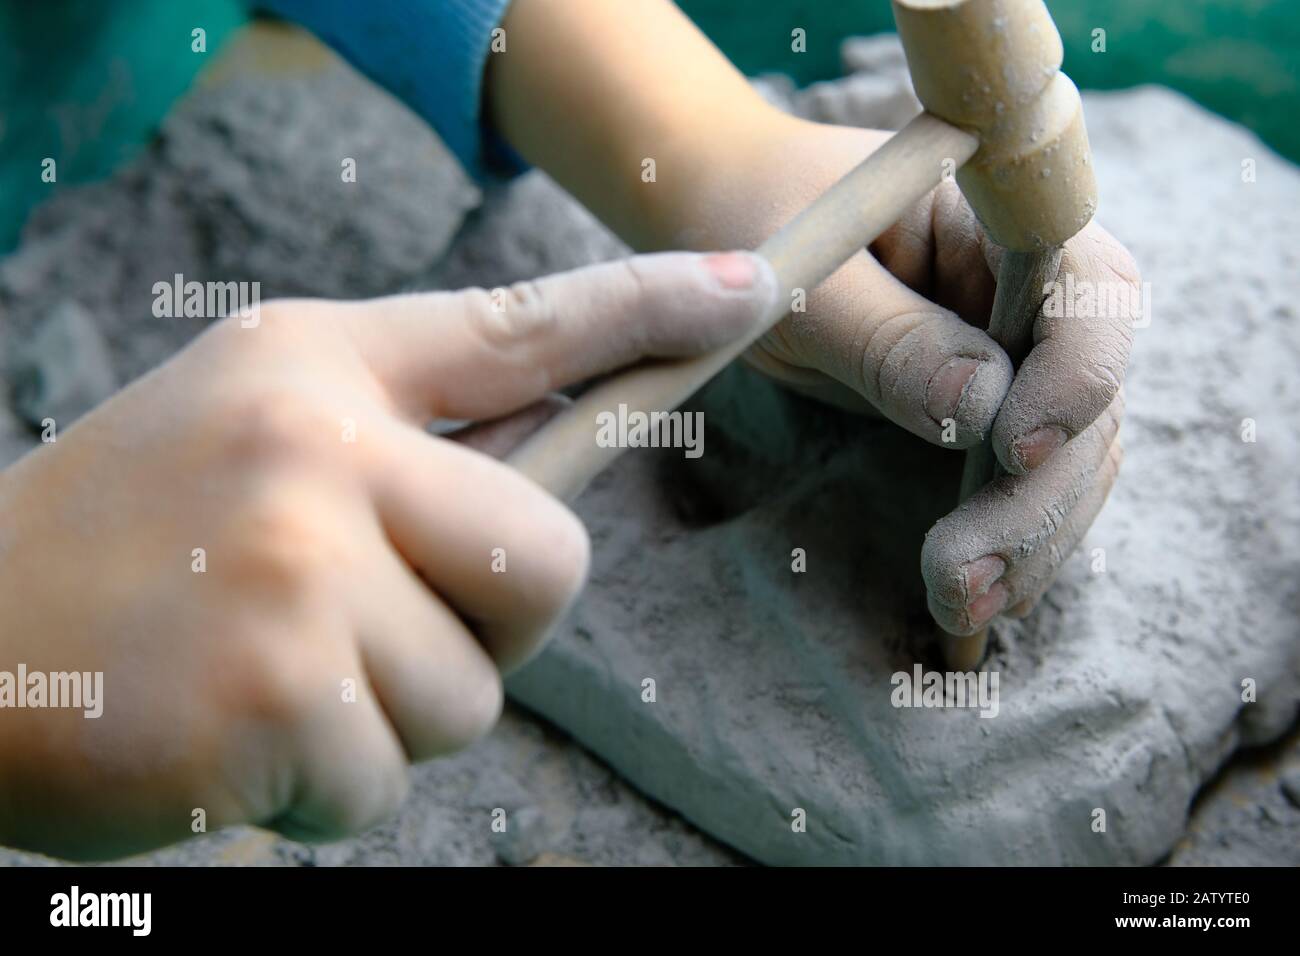 Bambino che gioca fossile, minerale e tesoro scavo gioco. Il bambino utilizza attrezzi, ad esempio un martello. Foto Stock